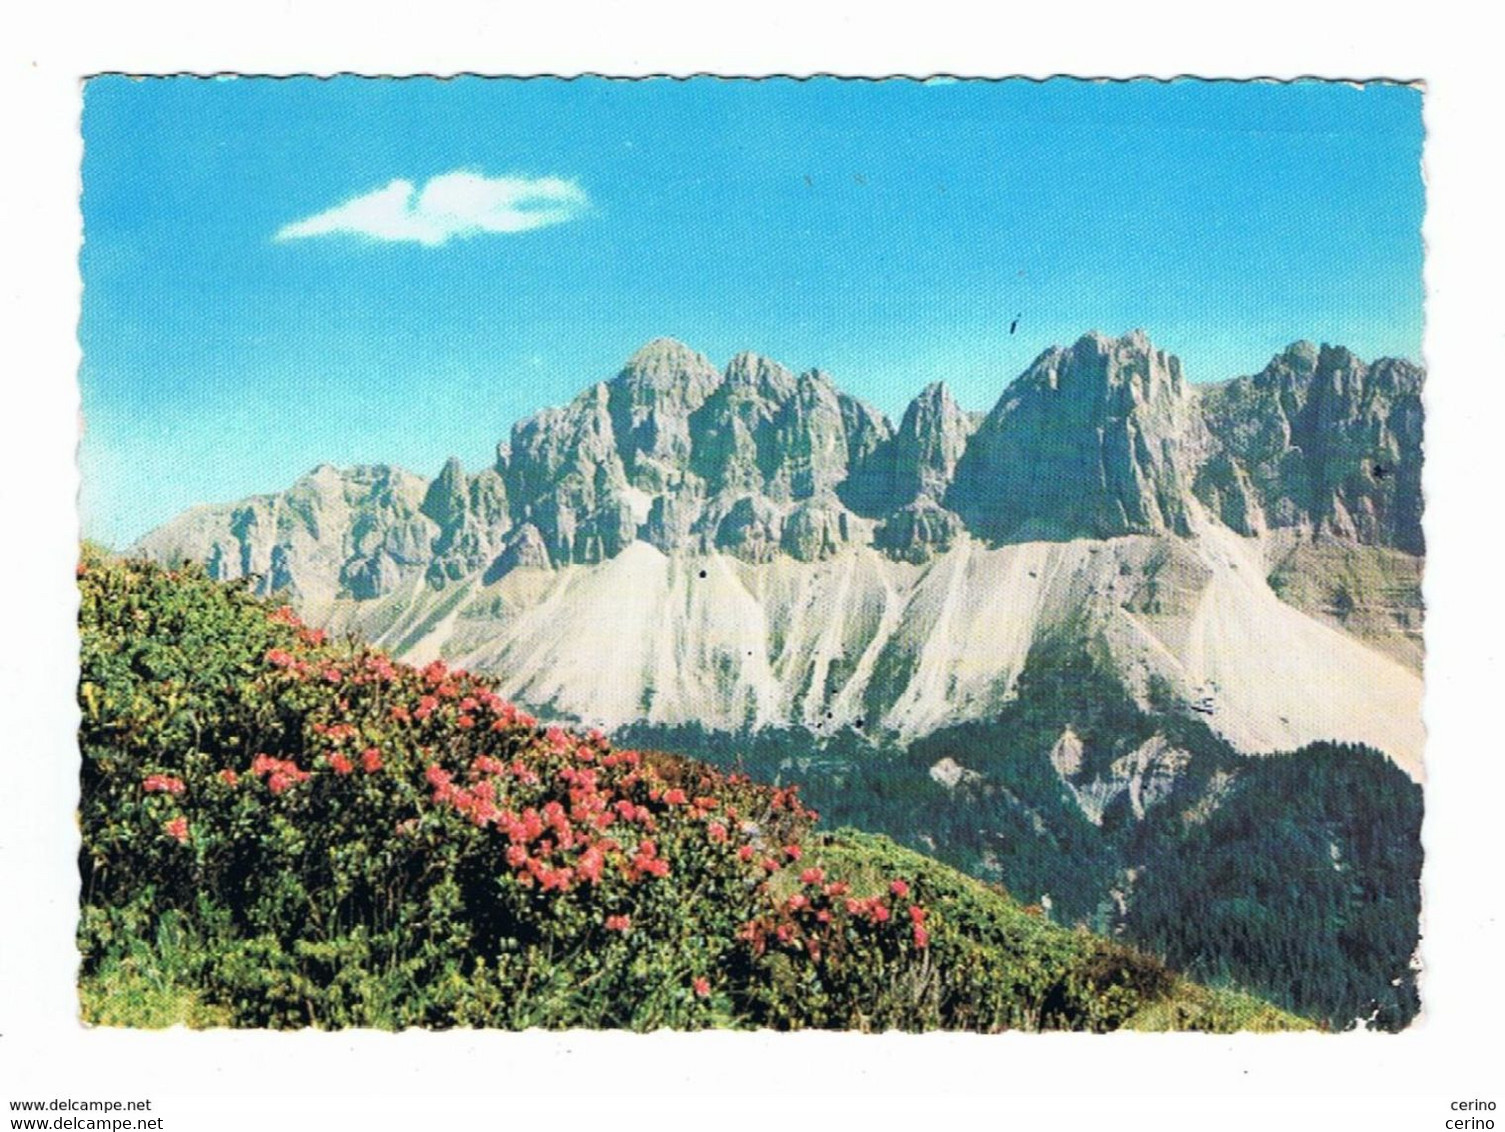 LE  ODLE  DI  EORES (BZ):   GRUPPO  DI  CIME  DOLOMITICHE  -  PER  LA  SVIZZERA  -  FG - Climbing